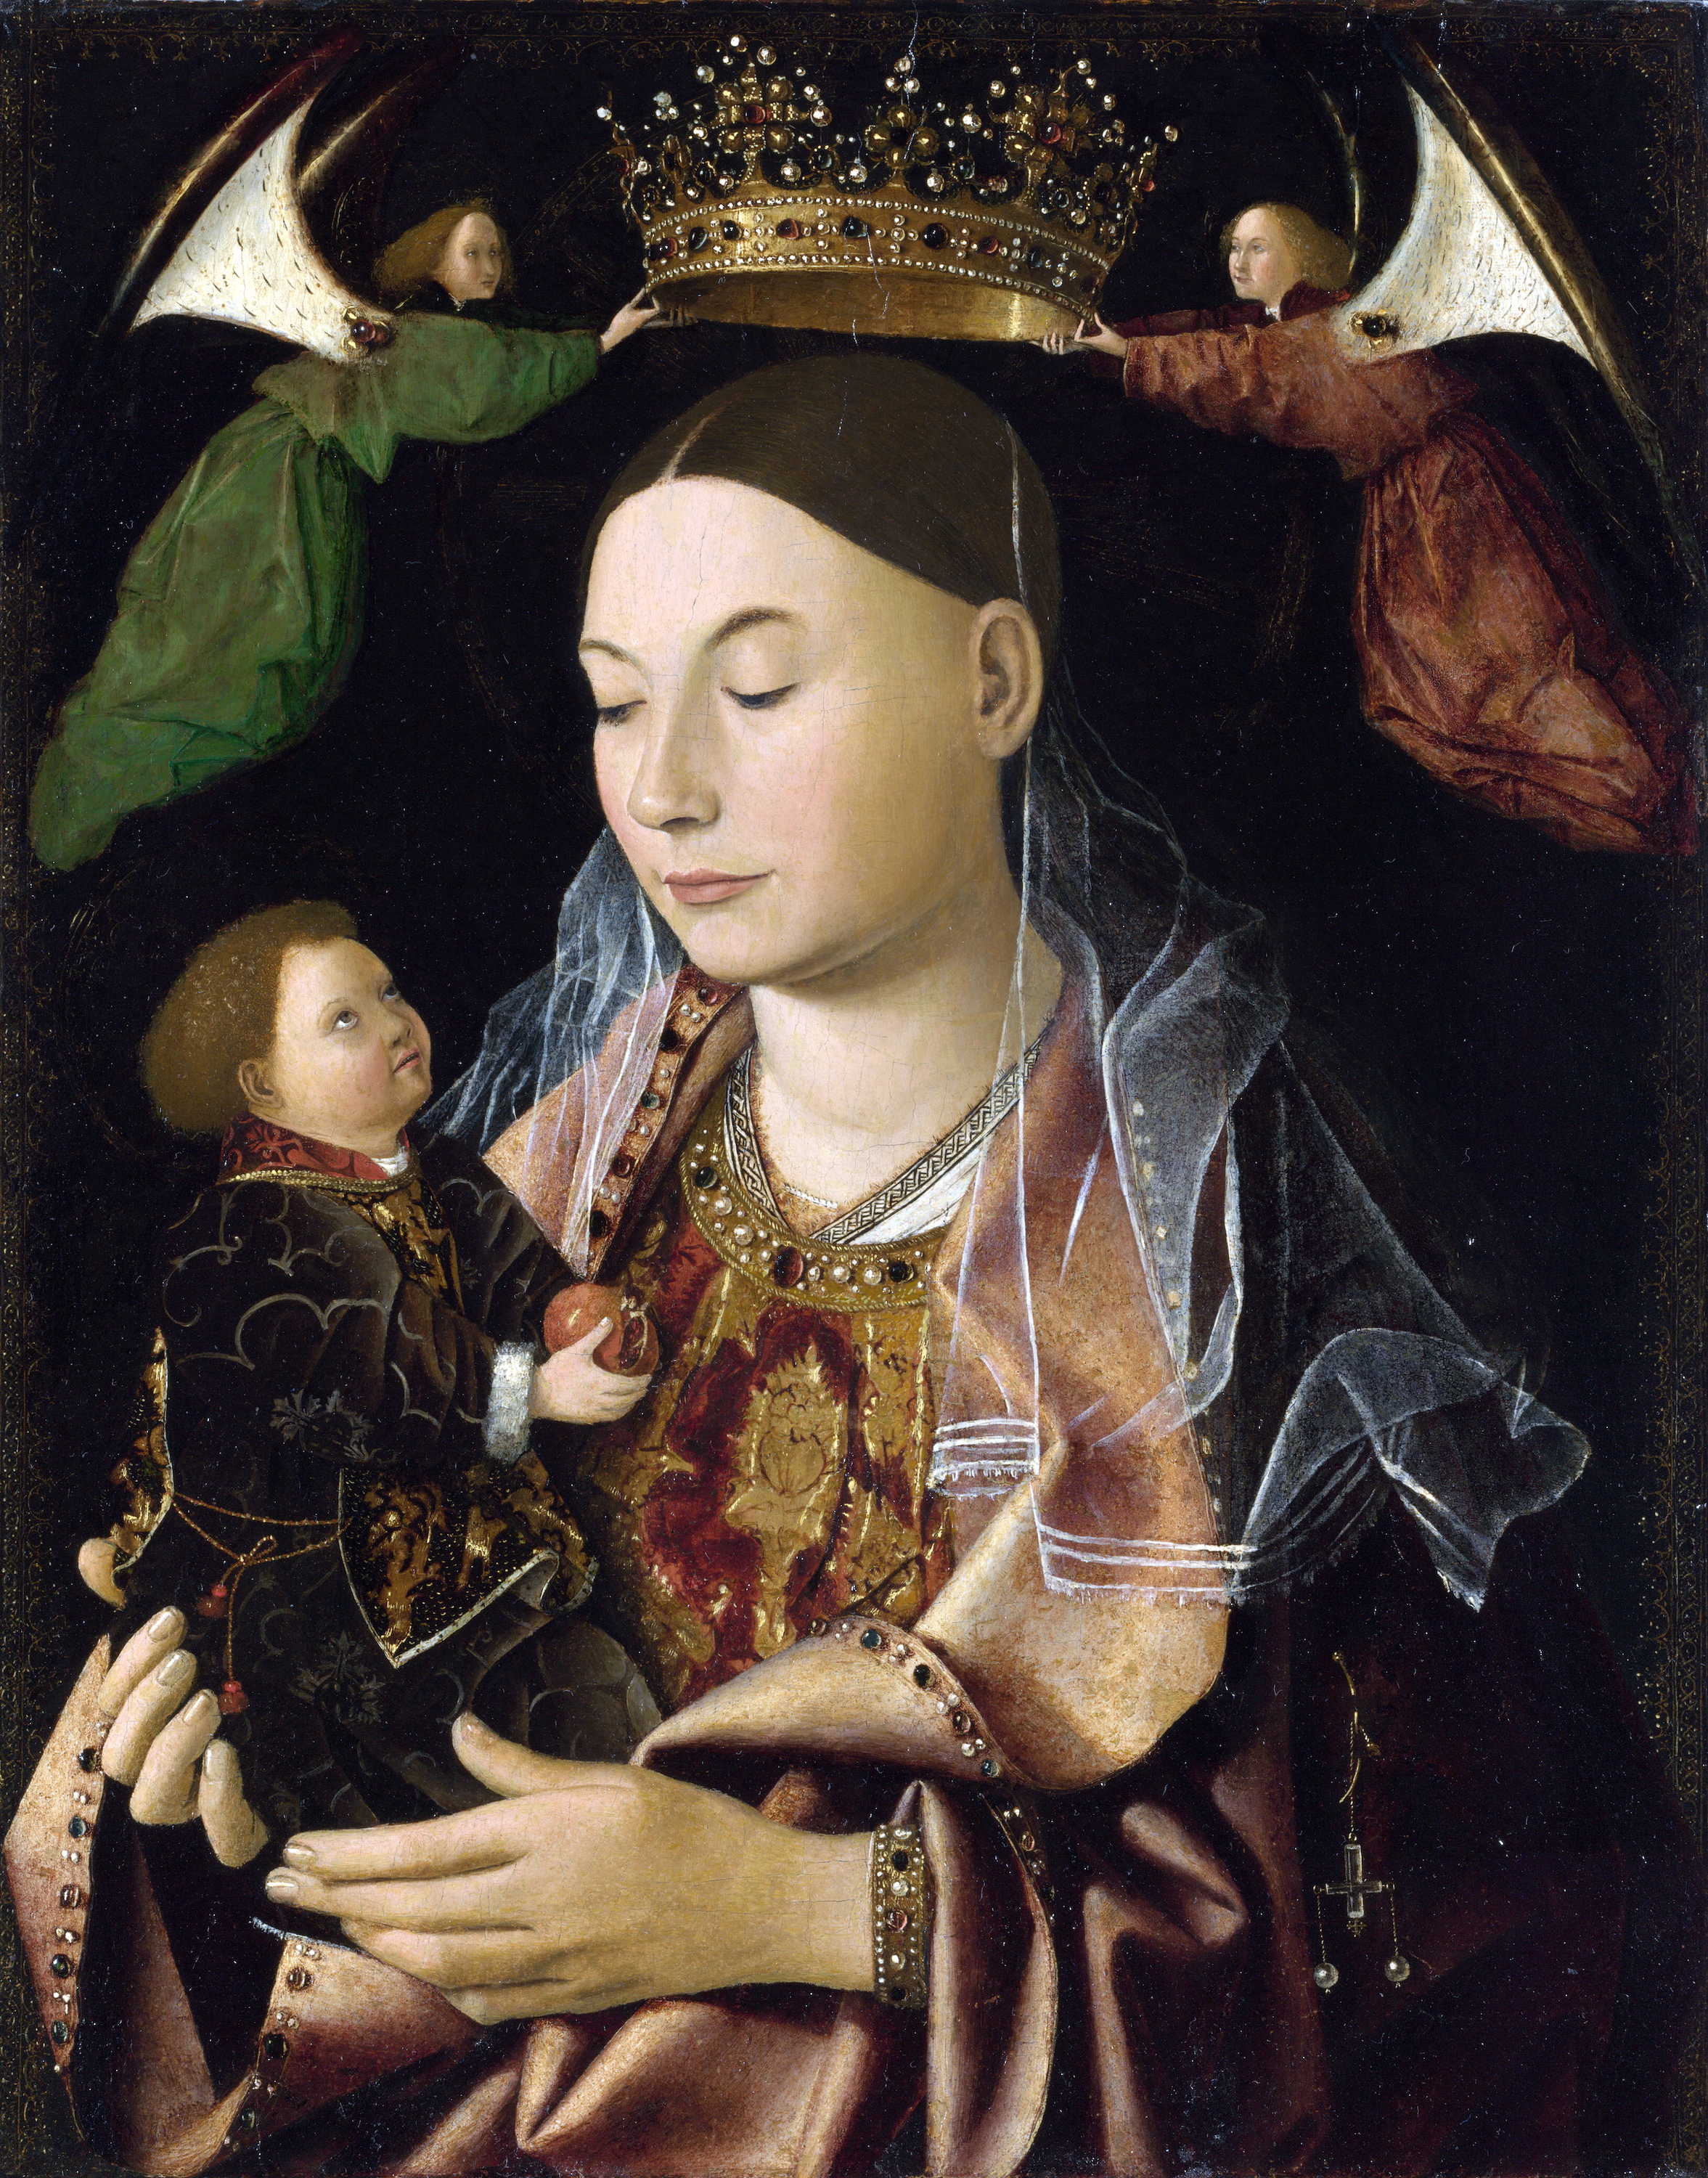 La Vierge à l’Enfant by Antonello da Messina - ca. 1460-1470 - 43,2 × 34,3 cm 